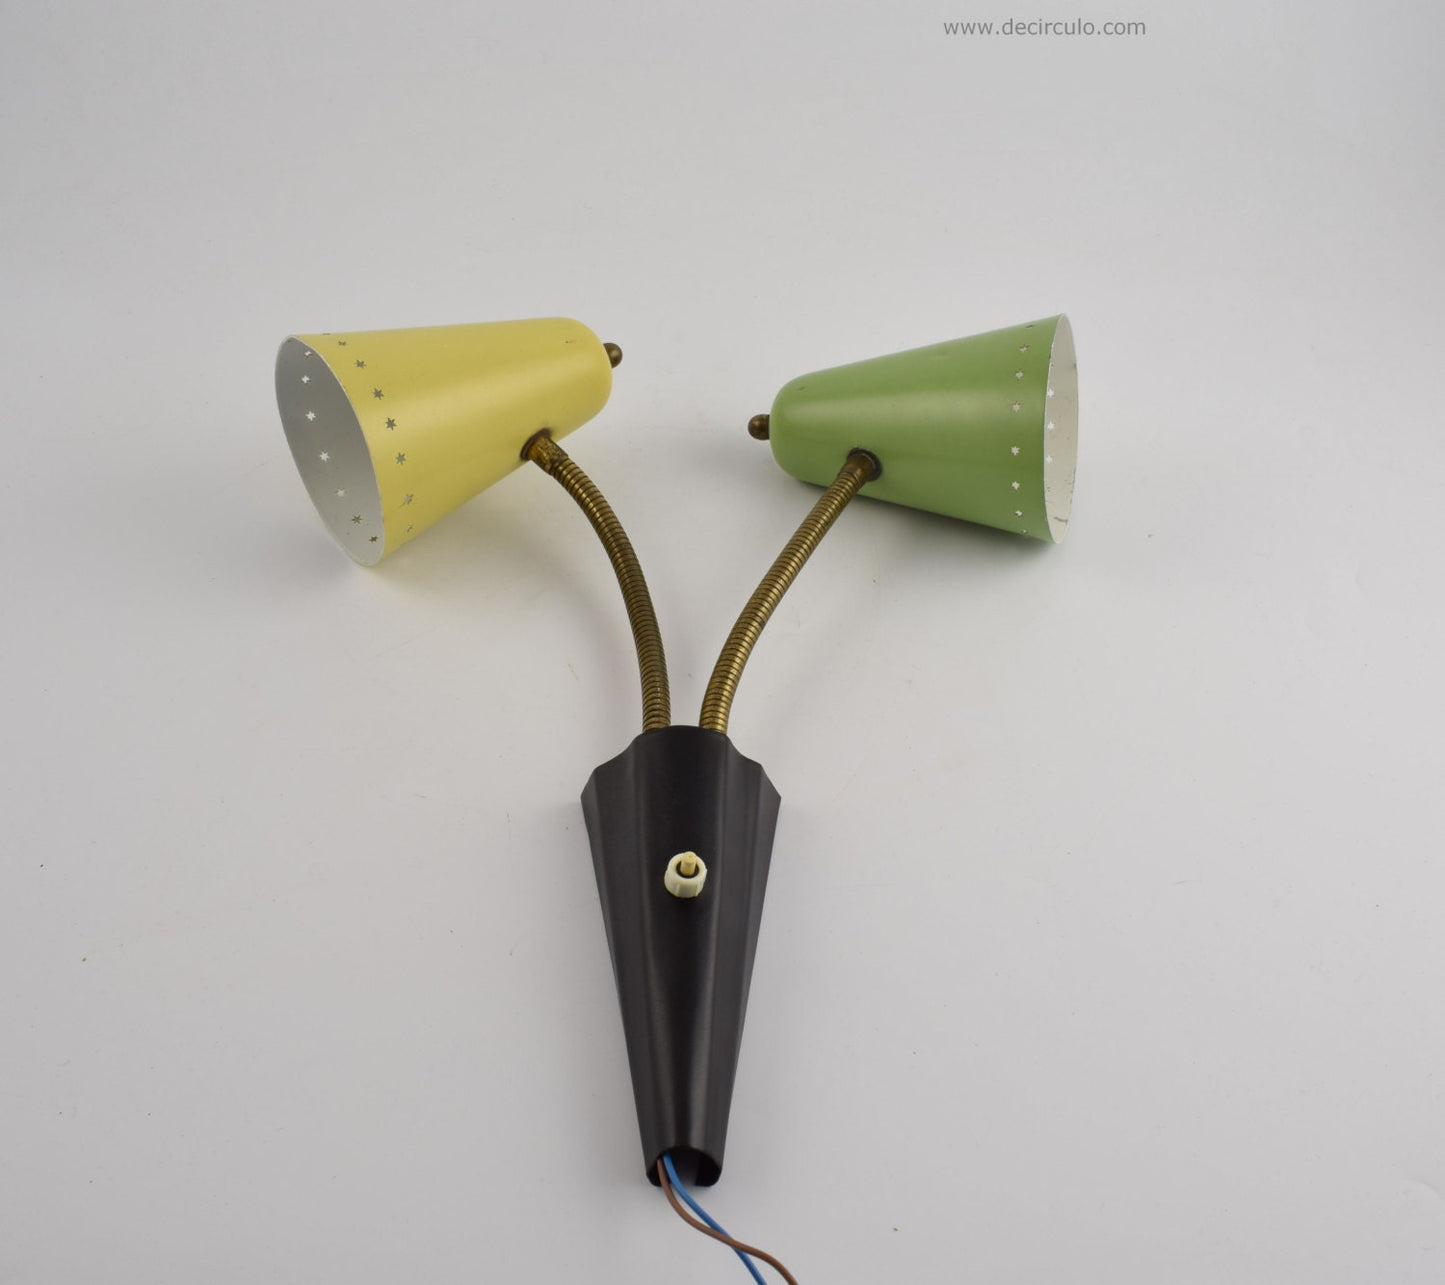 Hala zachtgele en groene wandlamp, blaker van busquet met stervormig patroon